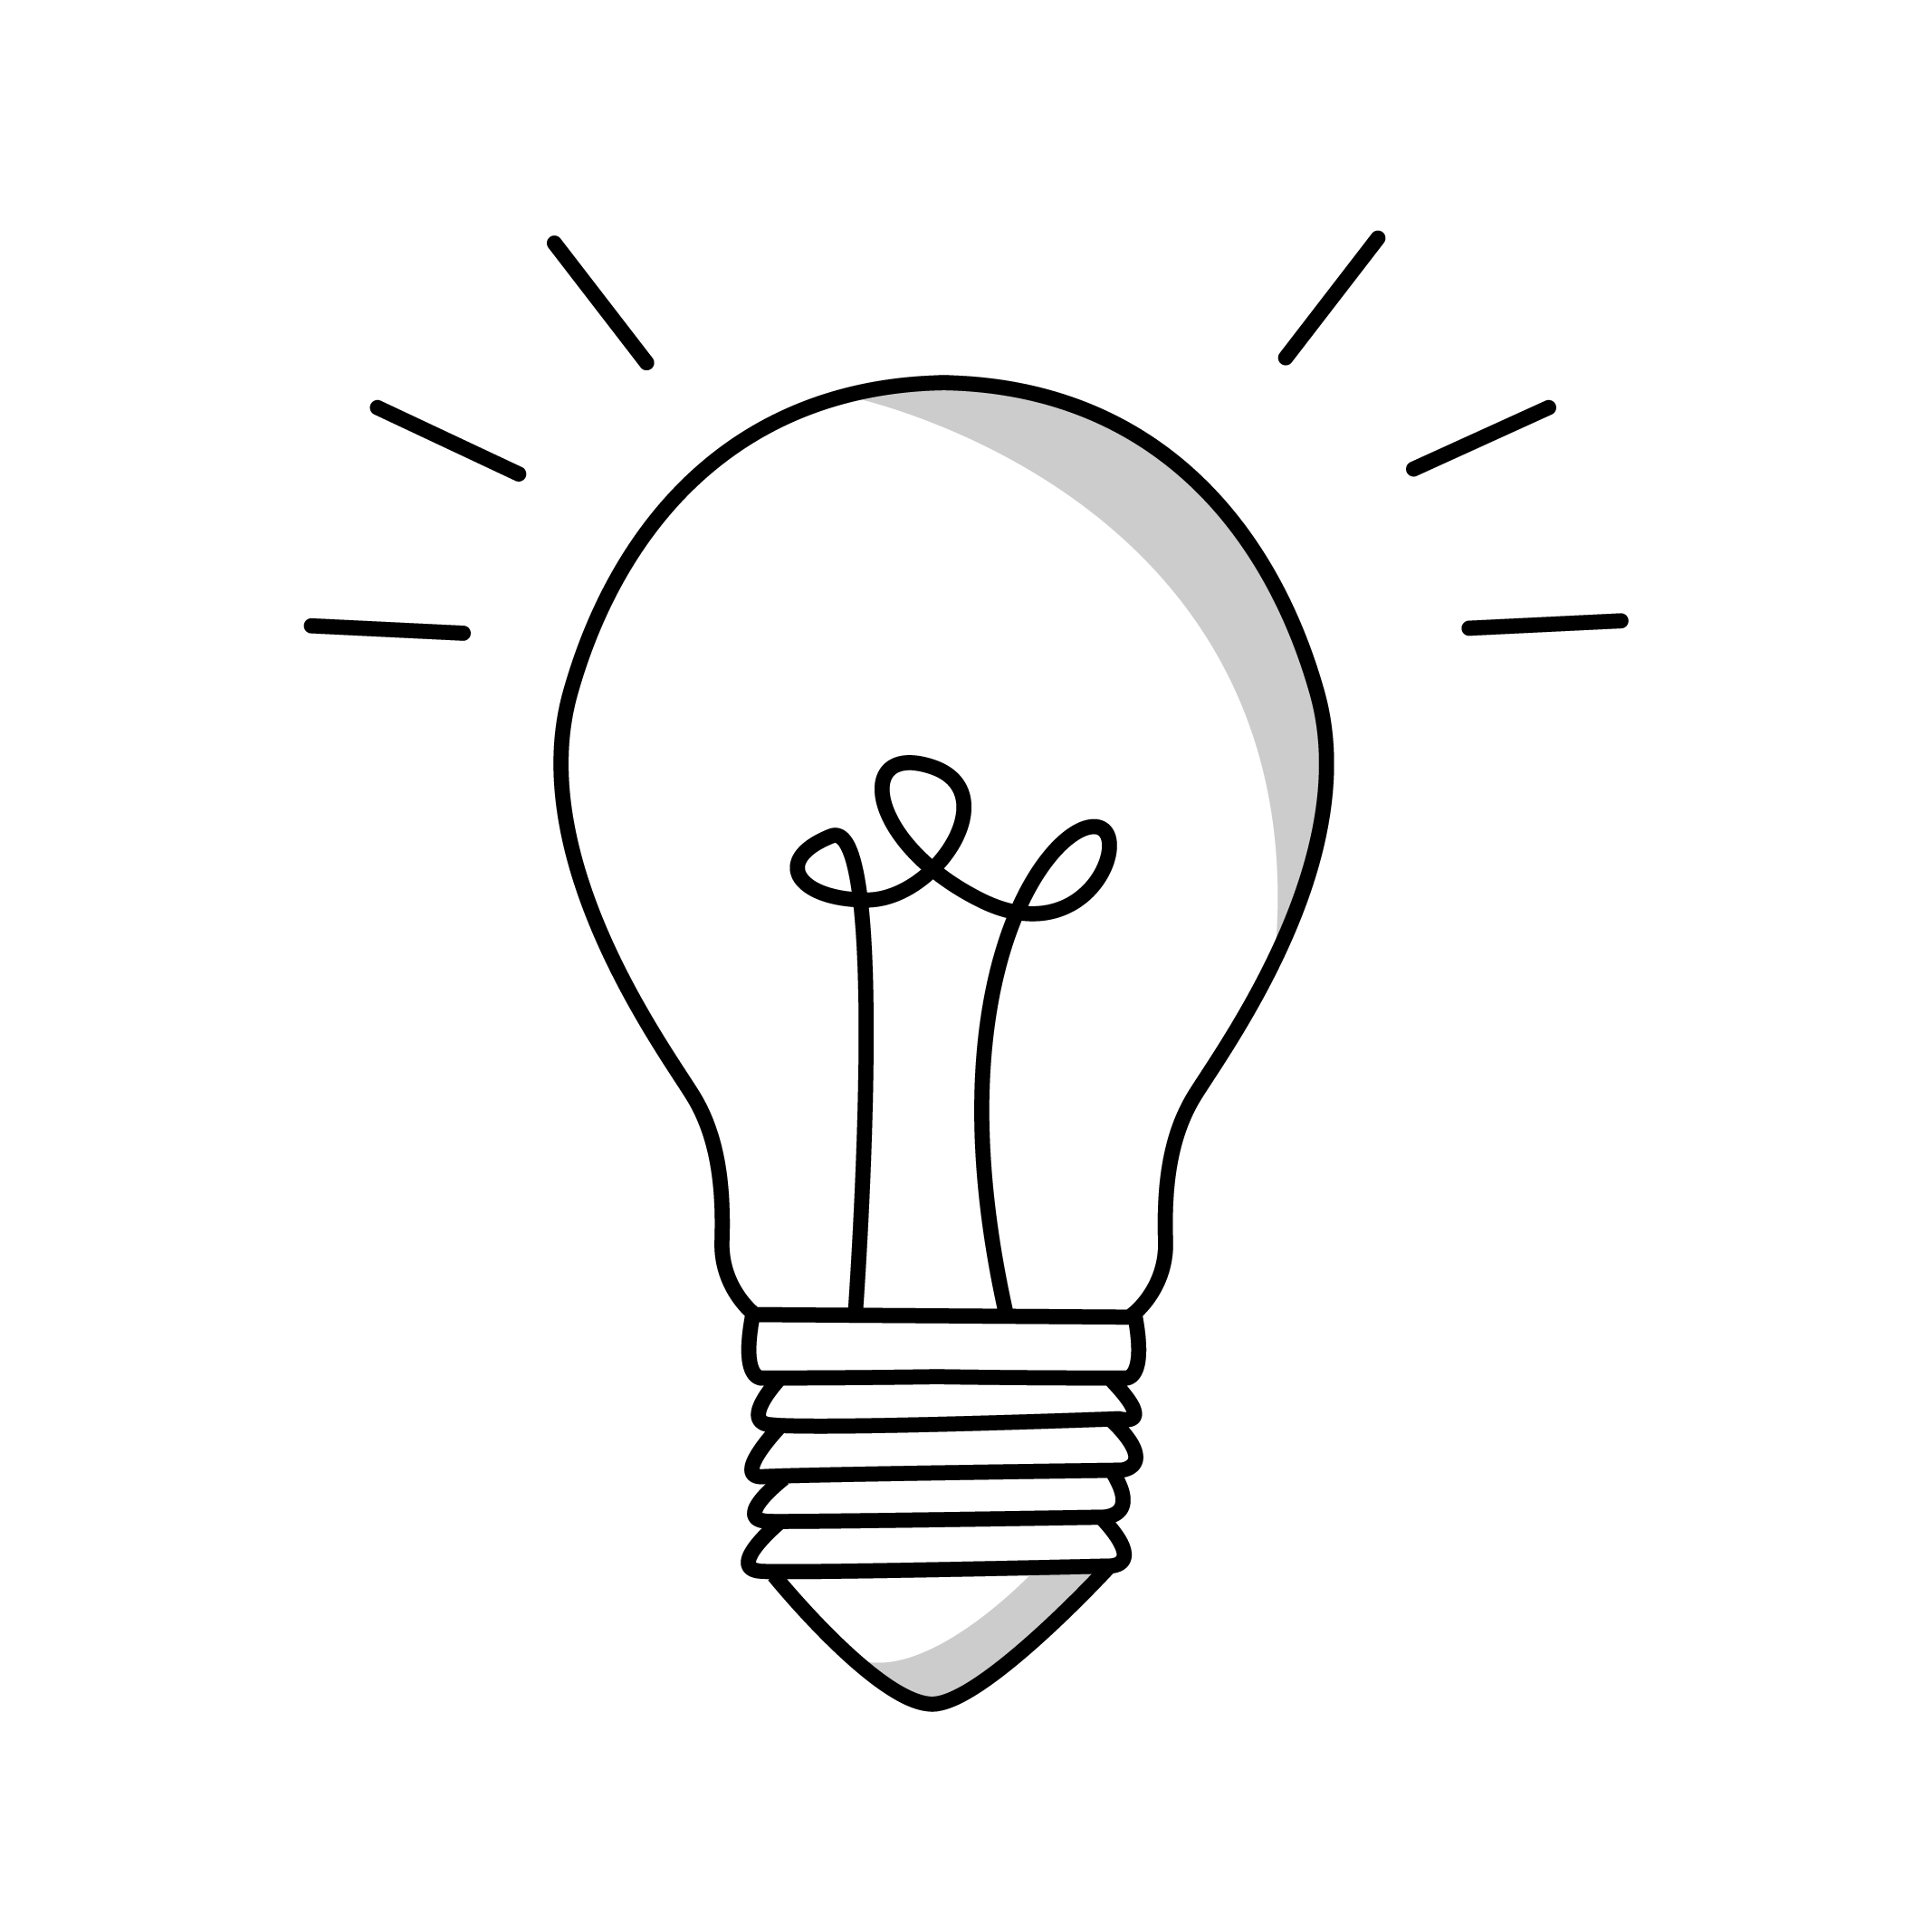 pictogramme noir d'une ampoule